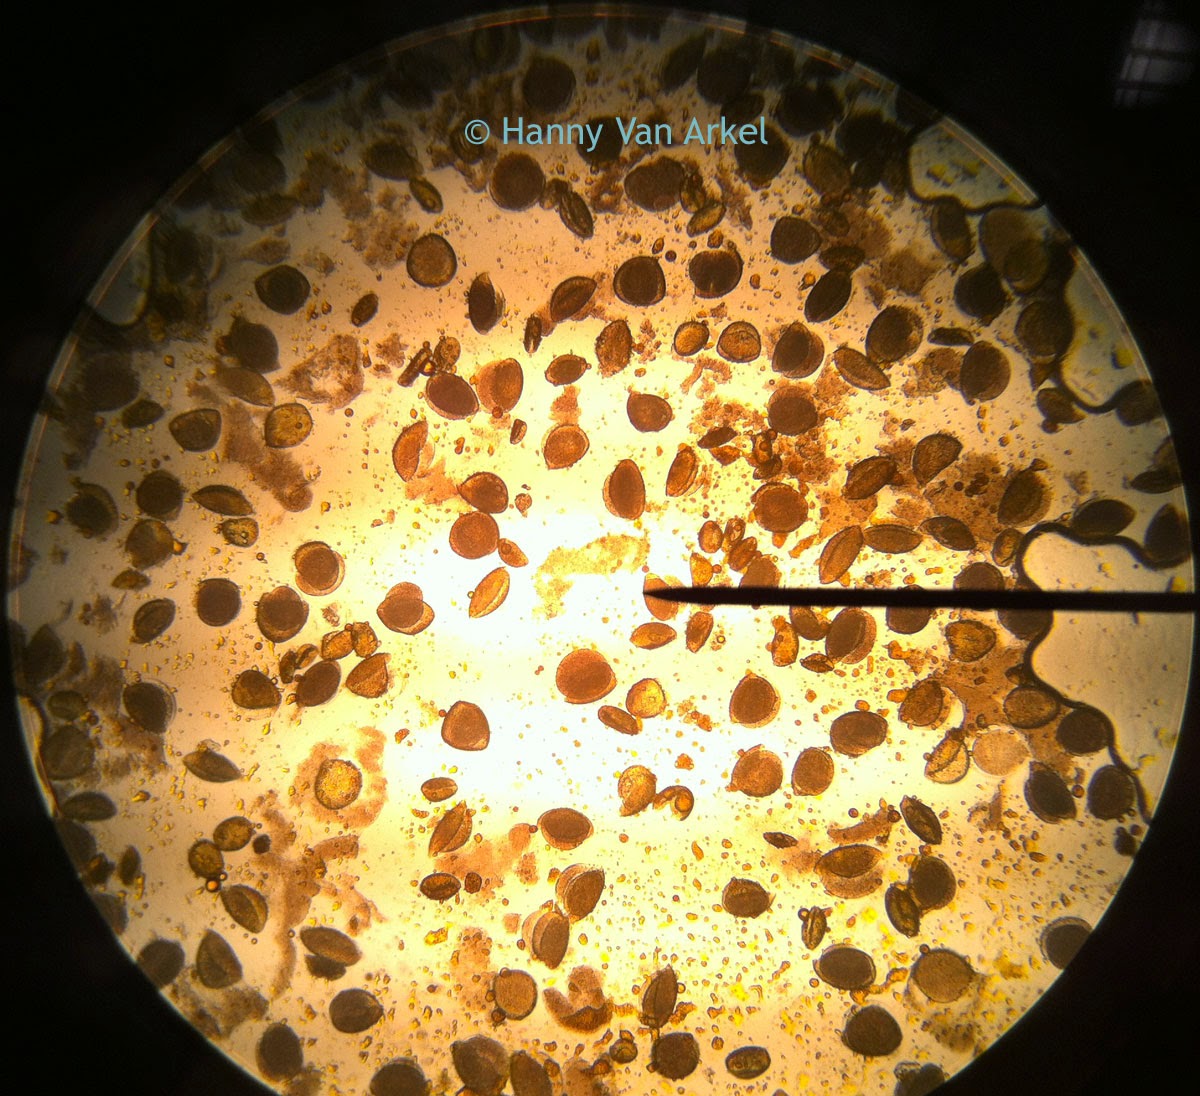 Pollen captured under microscope at 100x